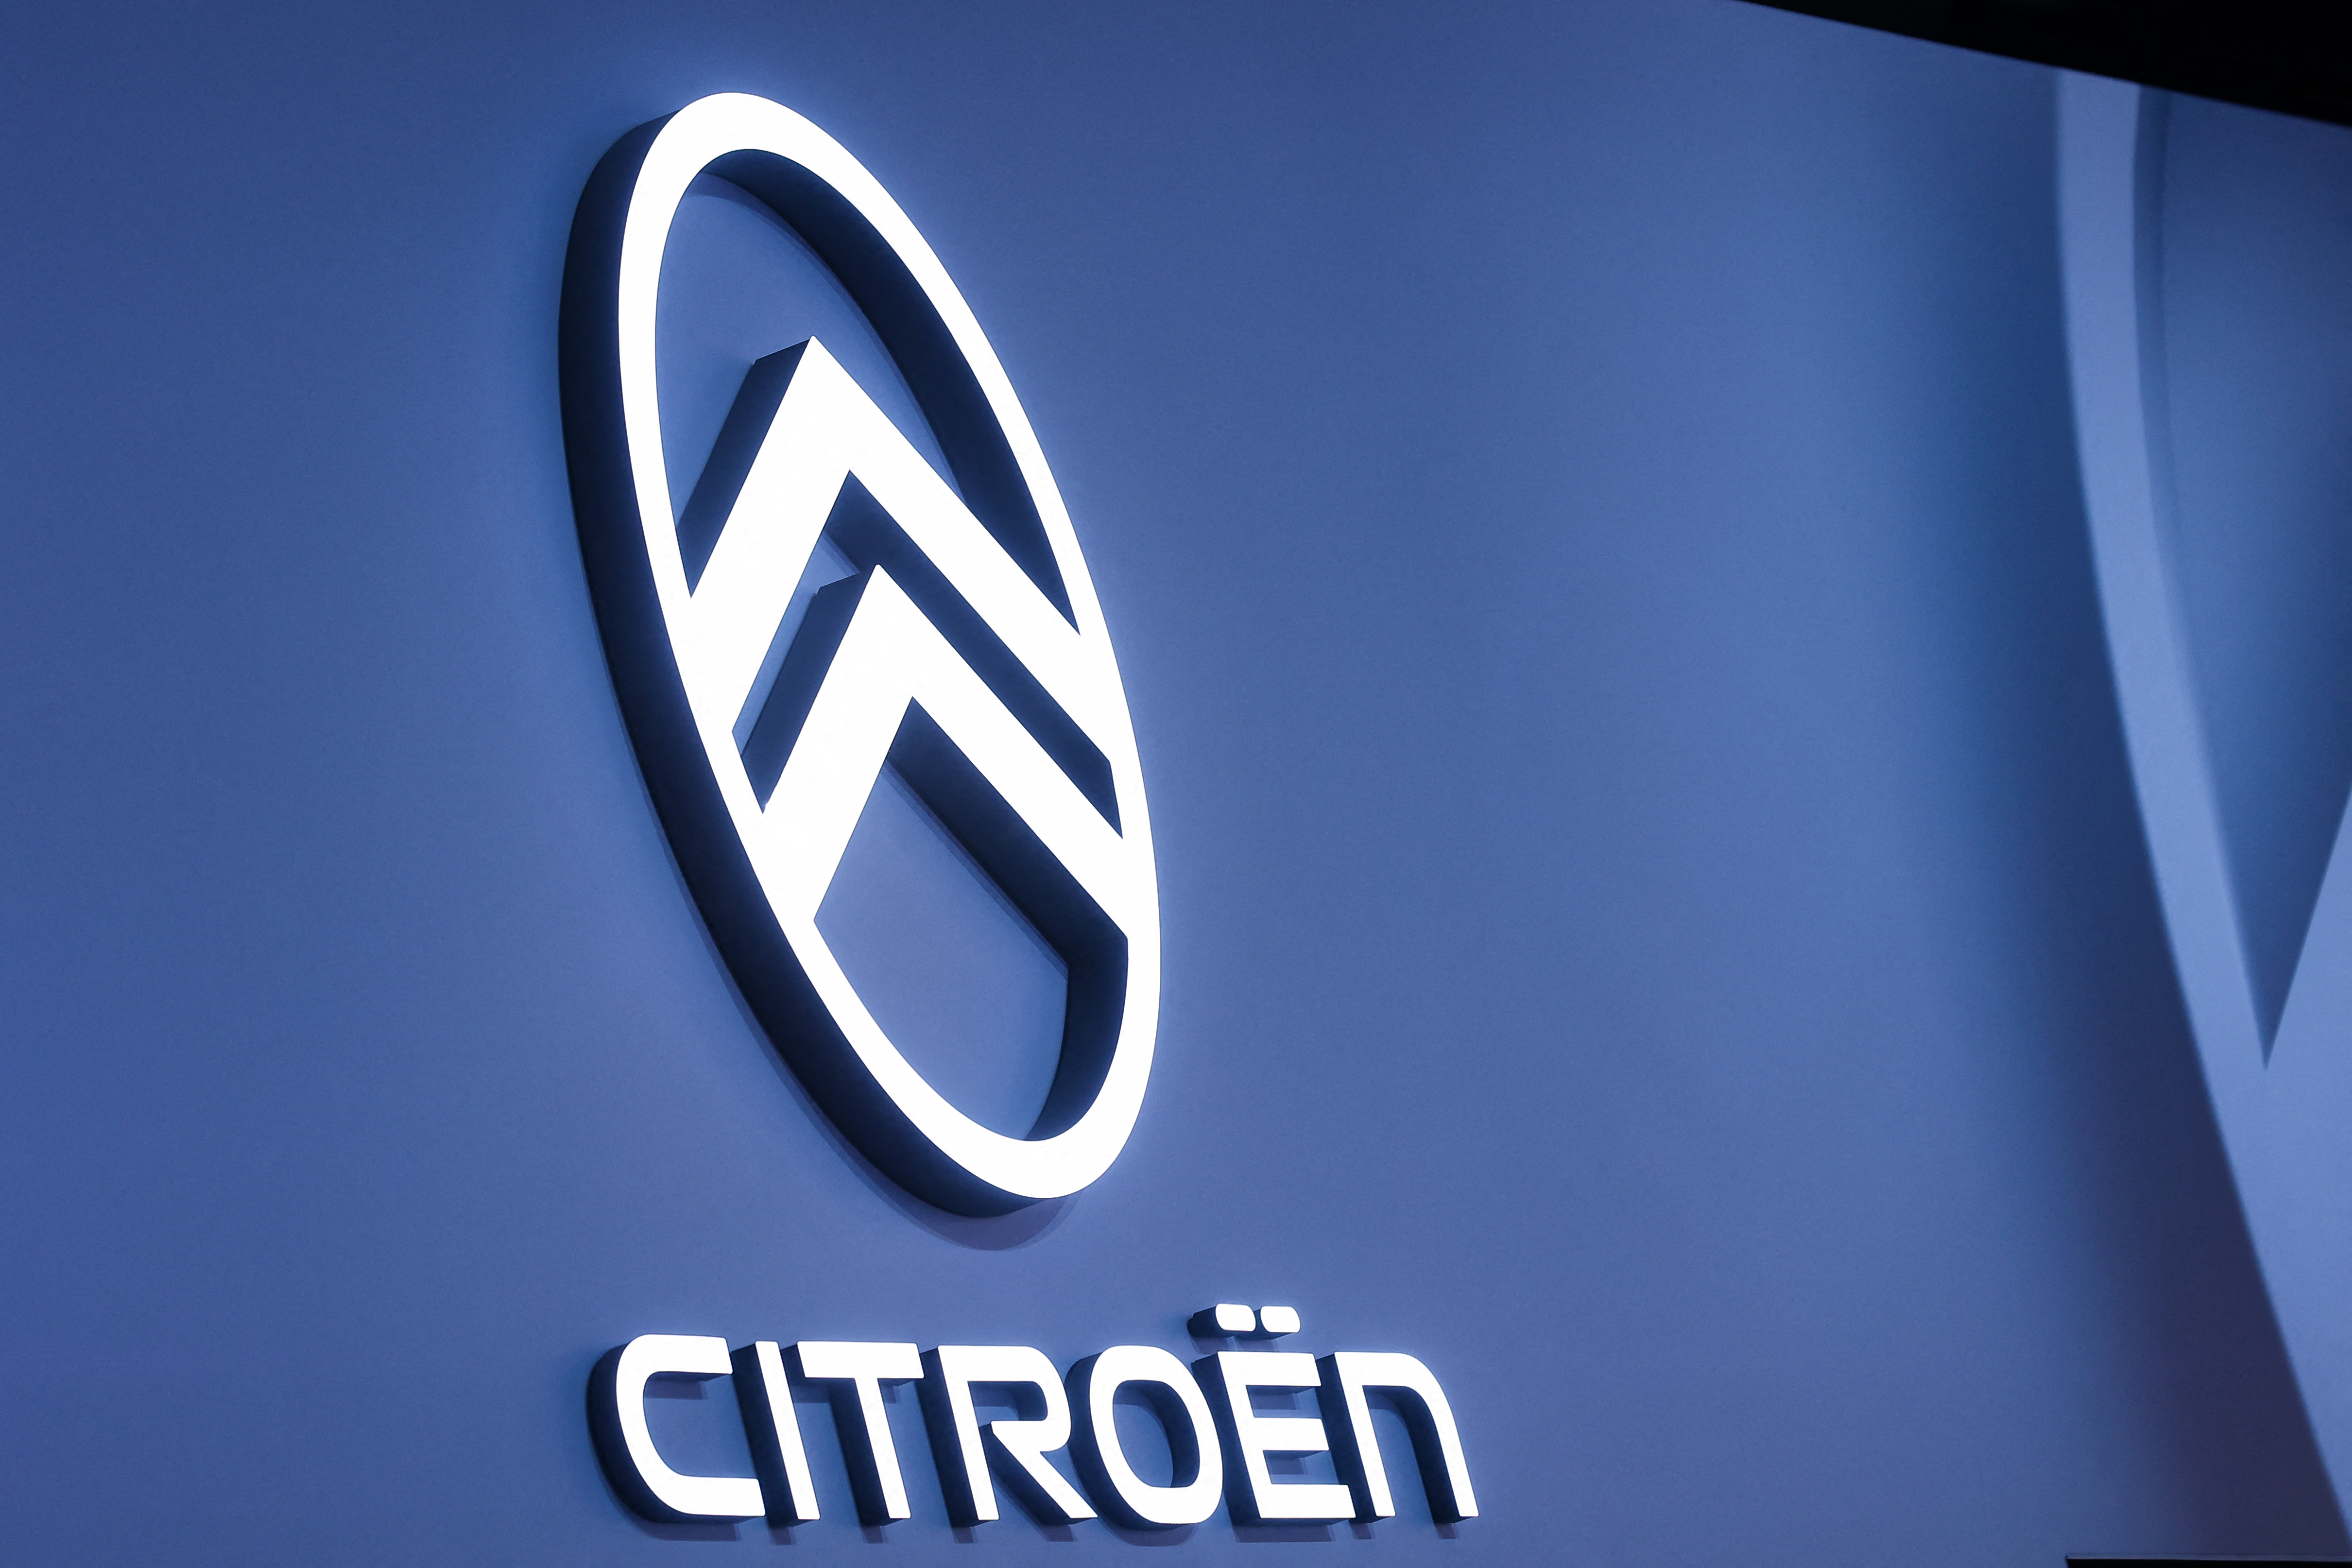 Avec sa nouvelle ë-C3, Citroën va-t-elle démocratiser la voiture